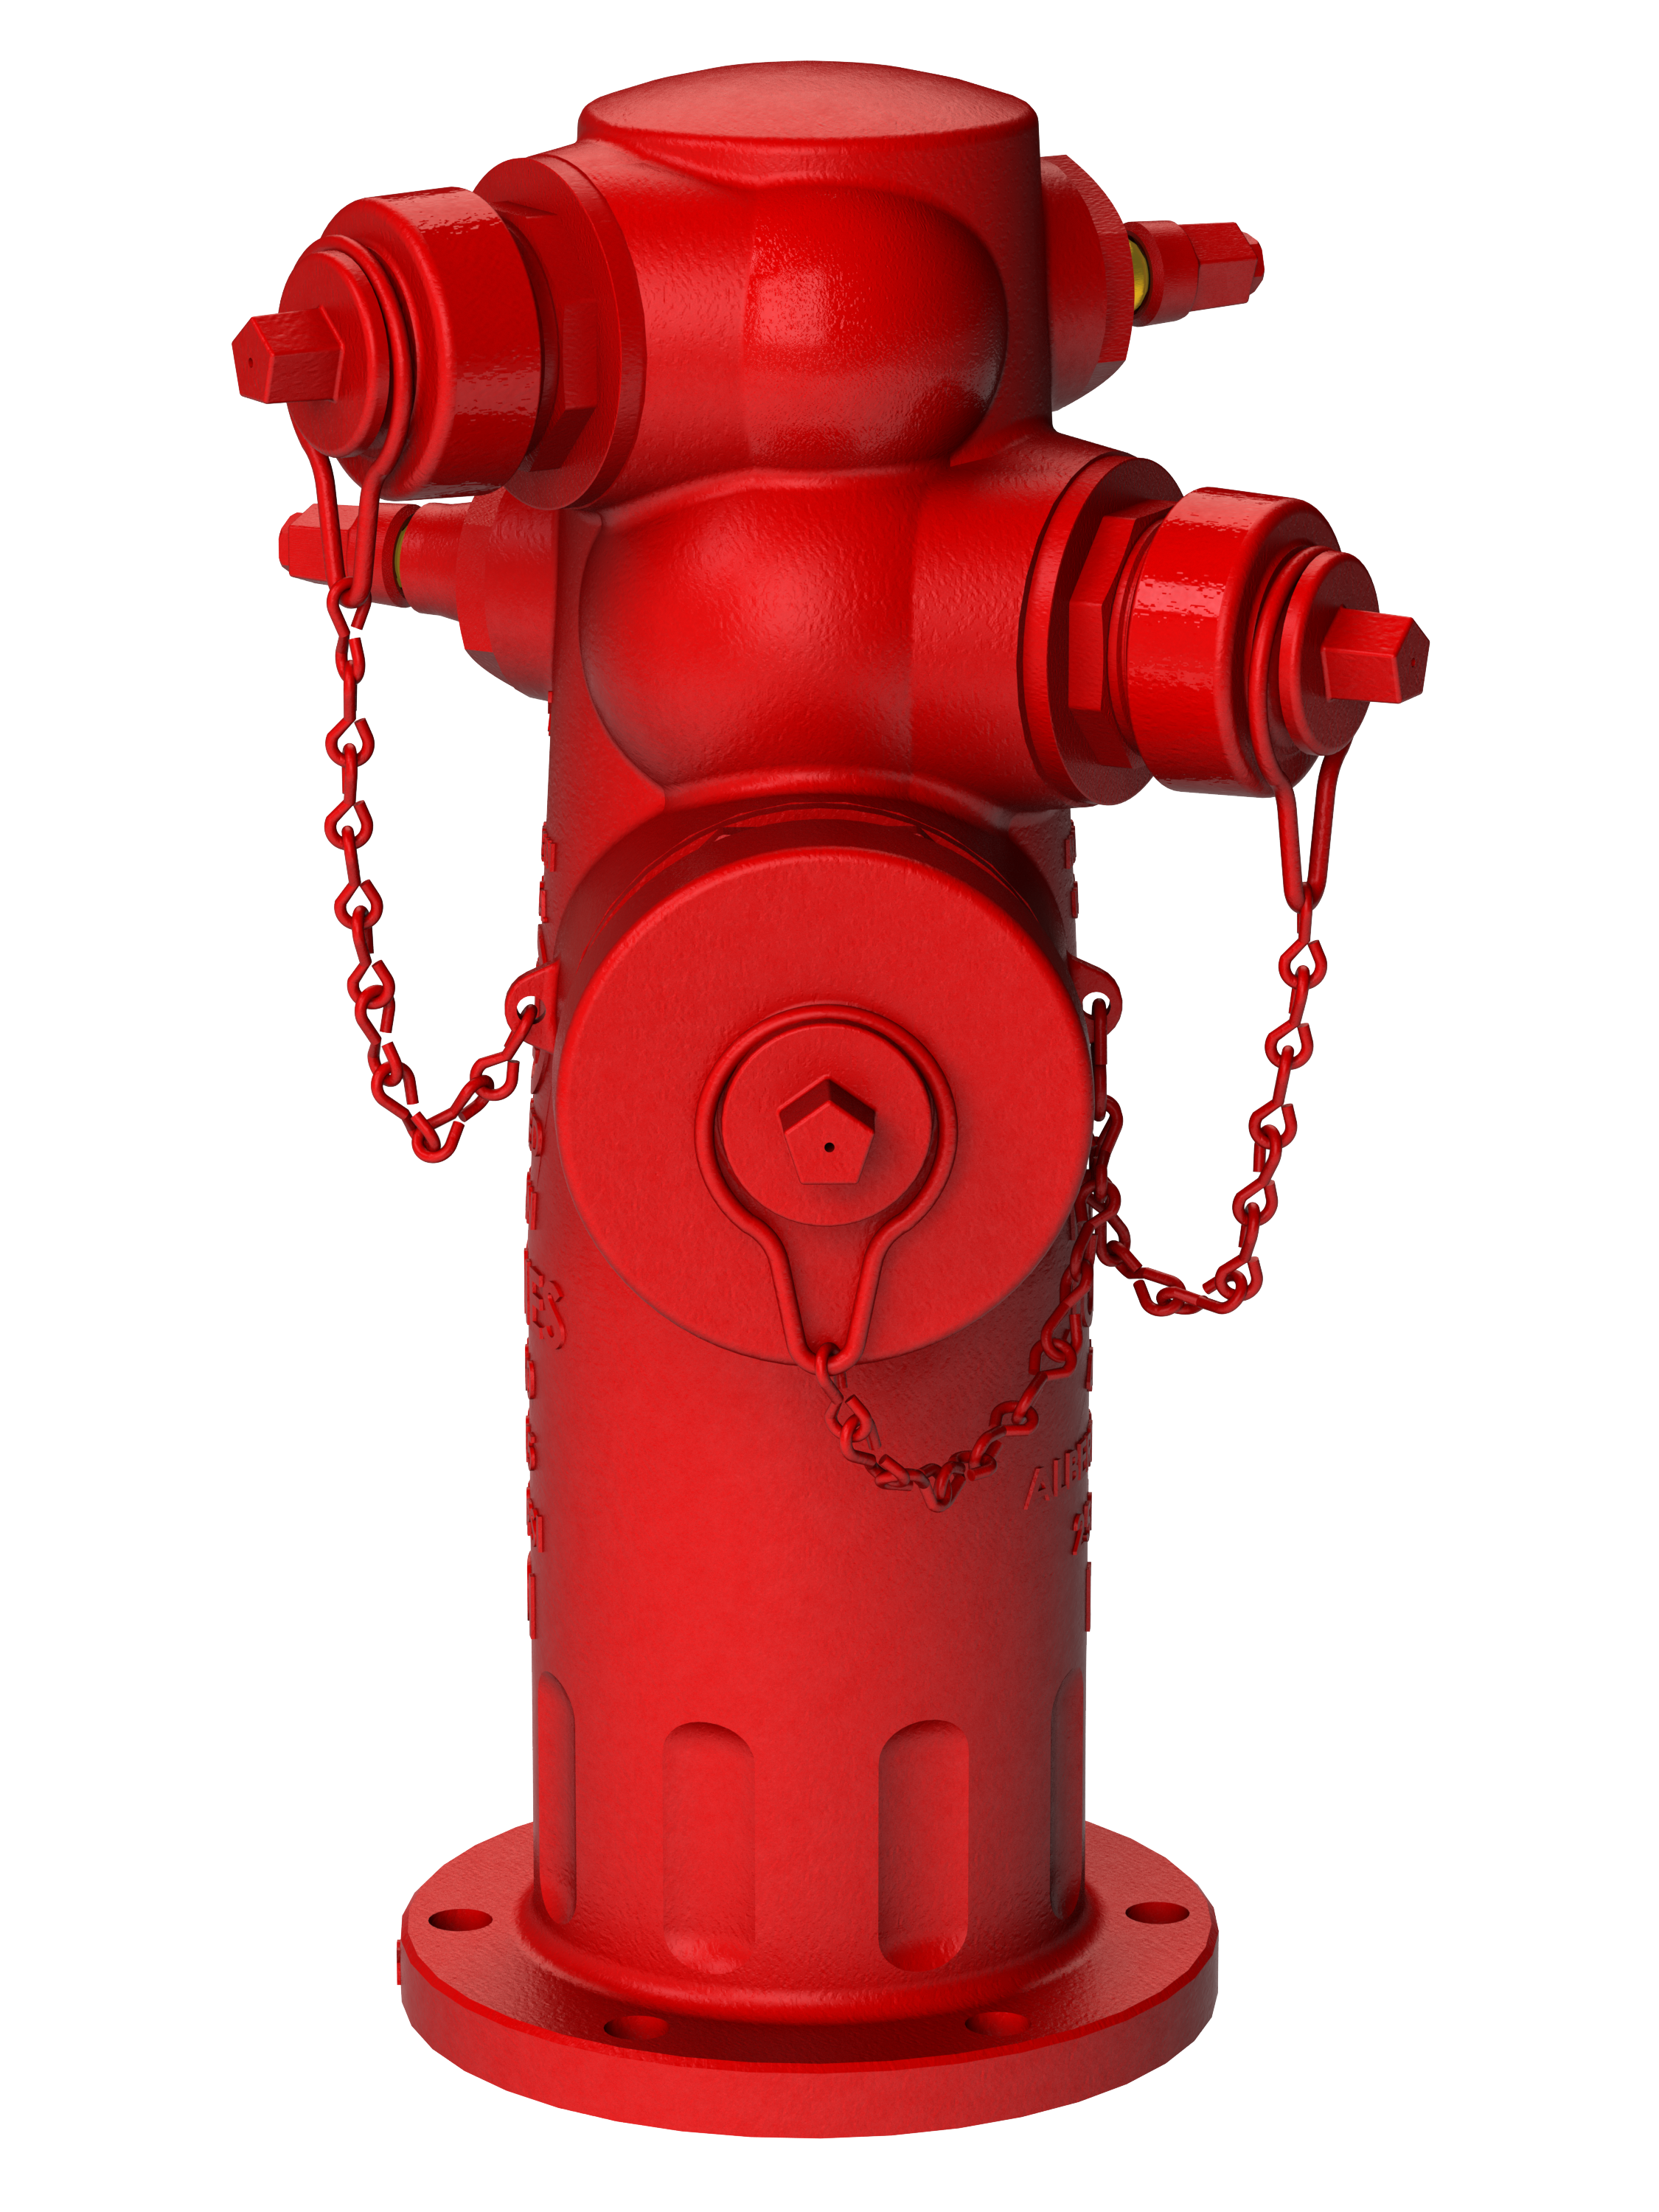 Cartoon fire hydrant, Cartoon